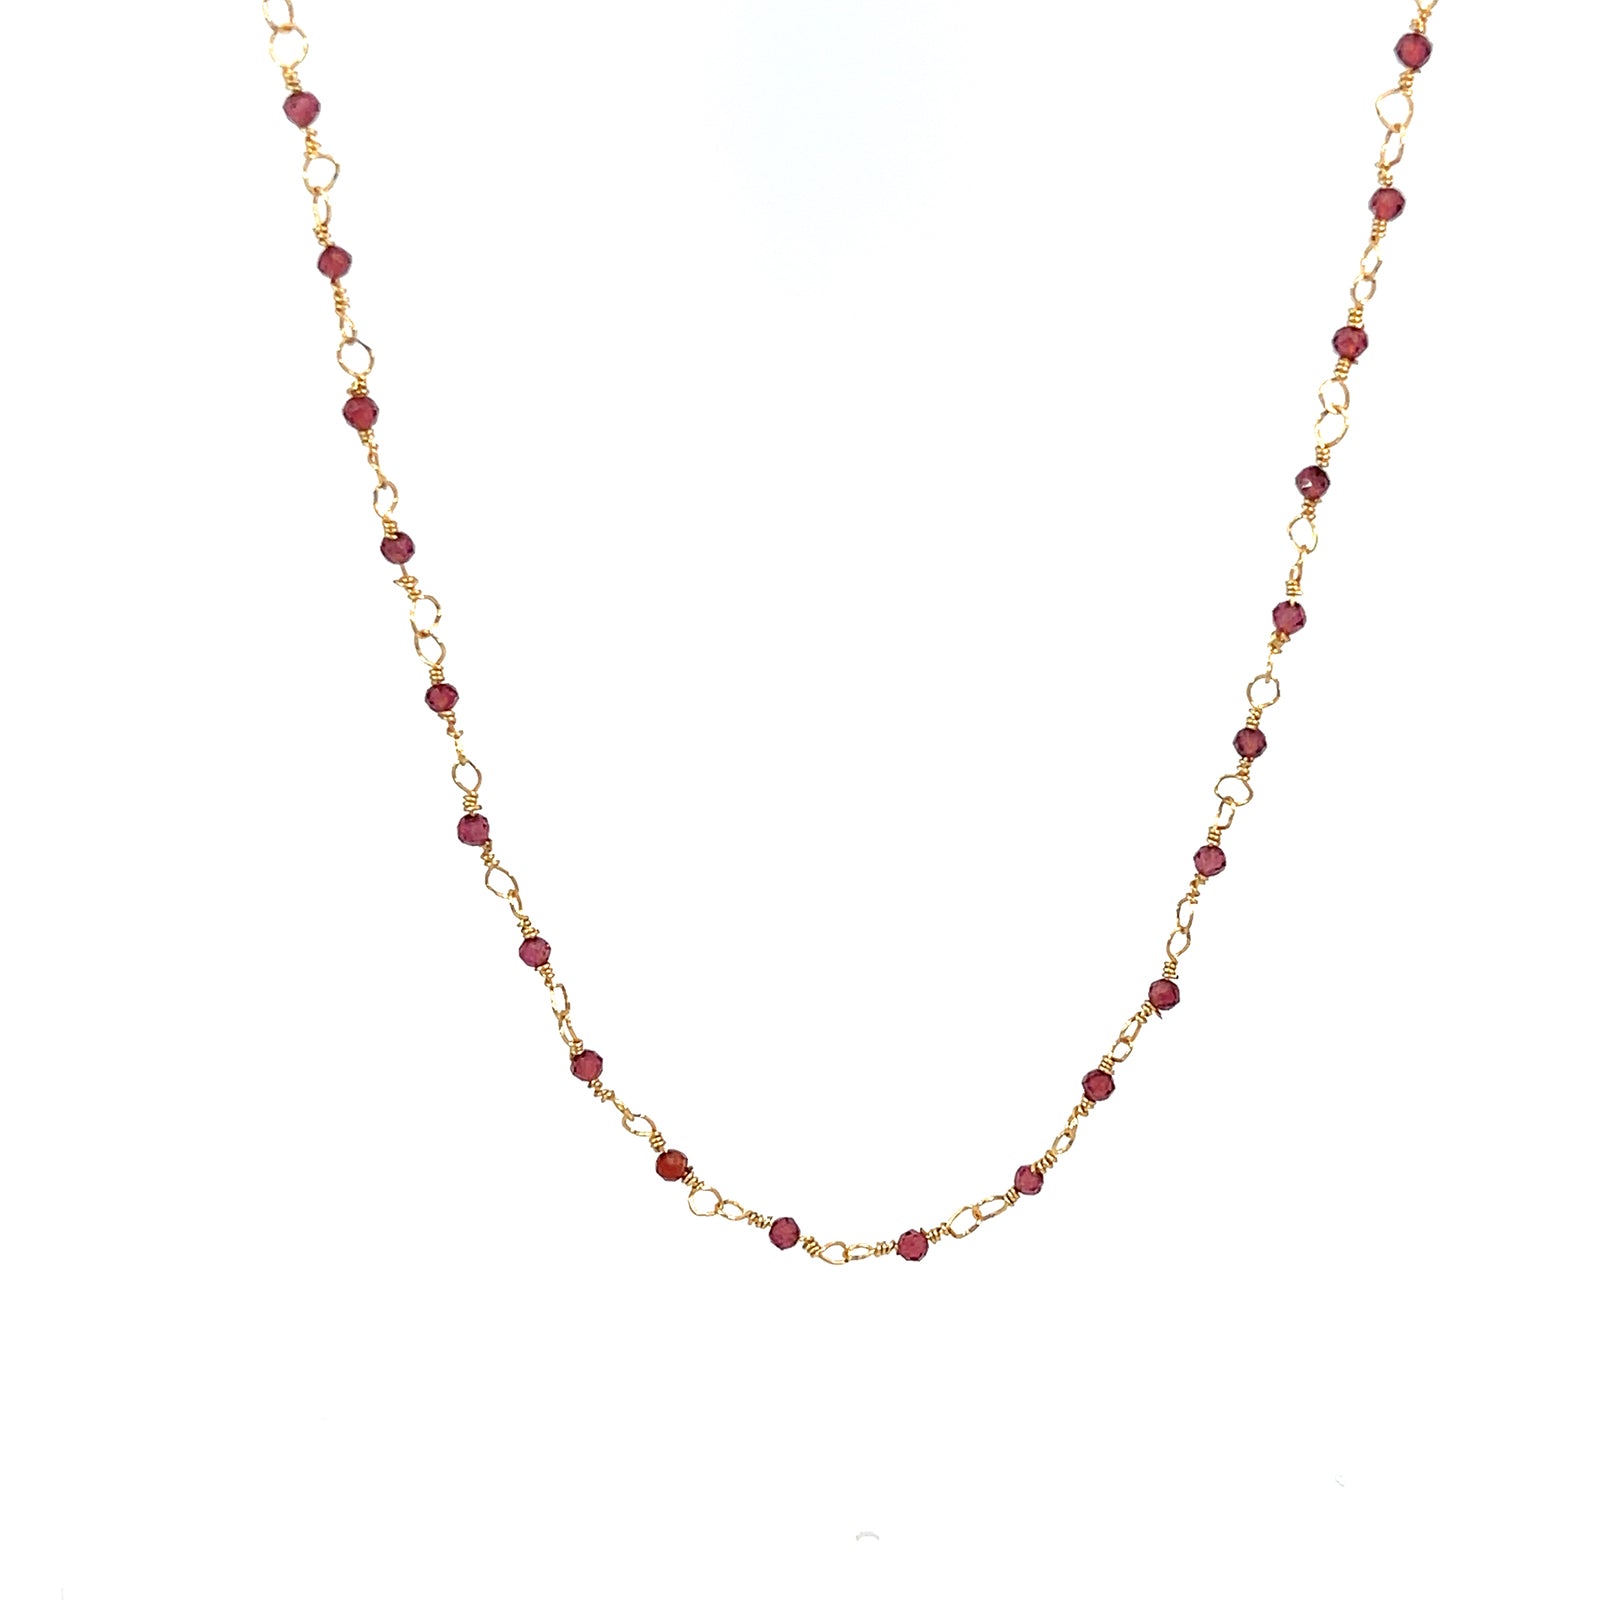 Elegant Chiyo Beaded Necklaces by Gosia Orlowska